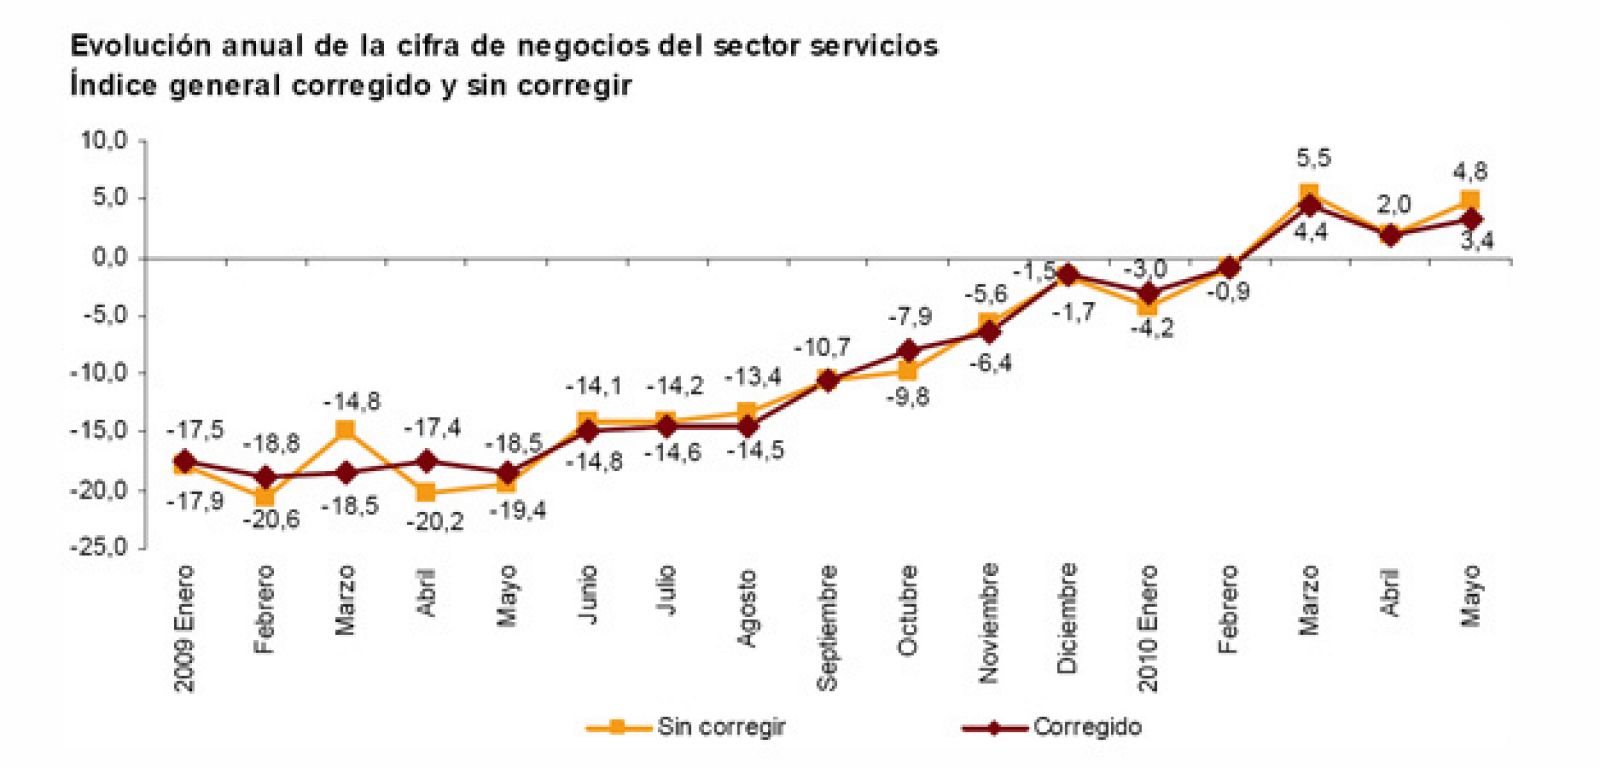 La actividad del sector servicios aumenta un 4,8% en mayo de 2010.